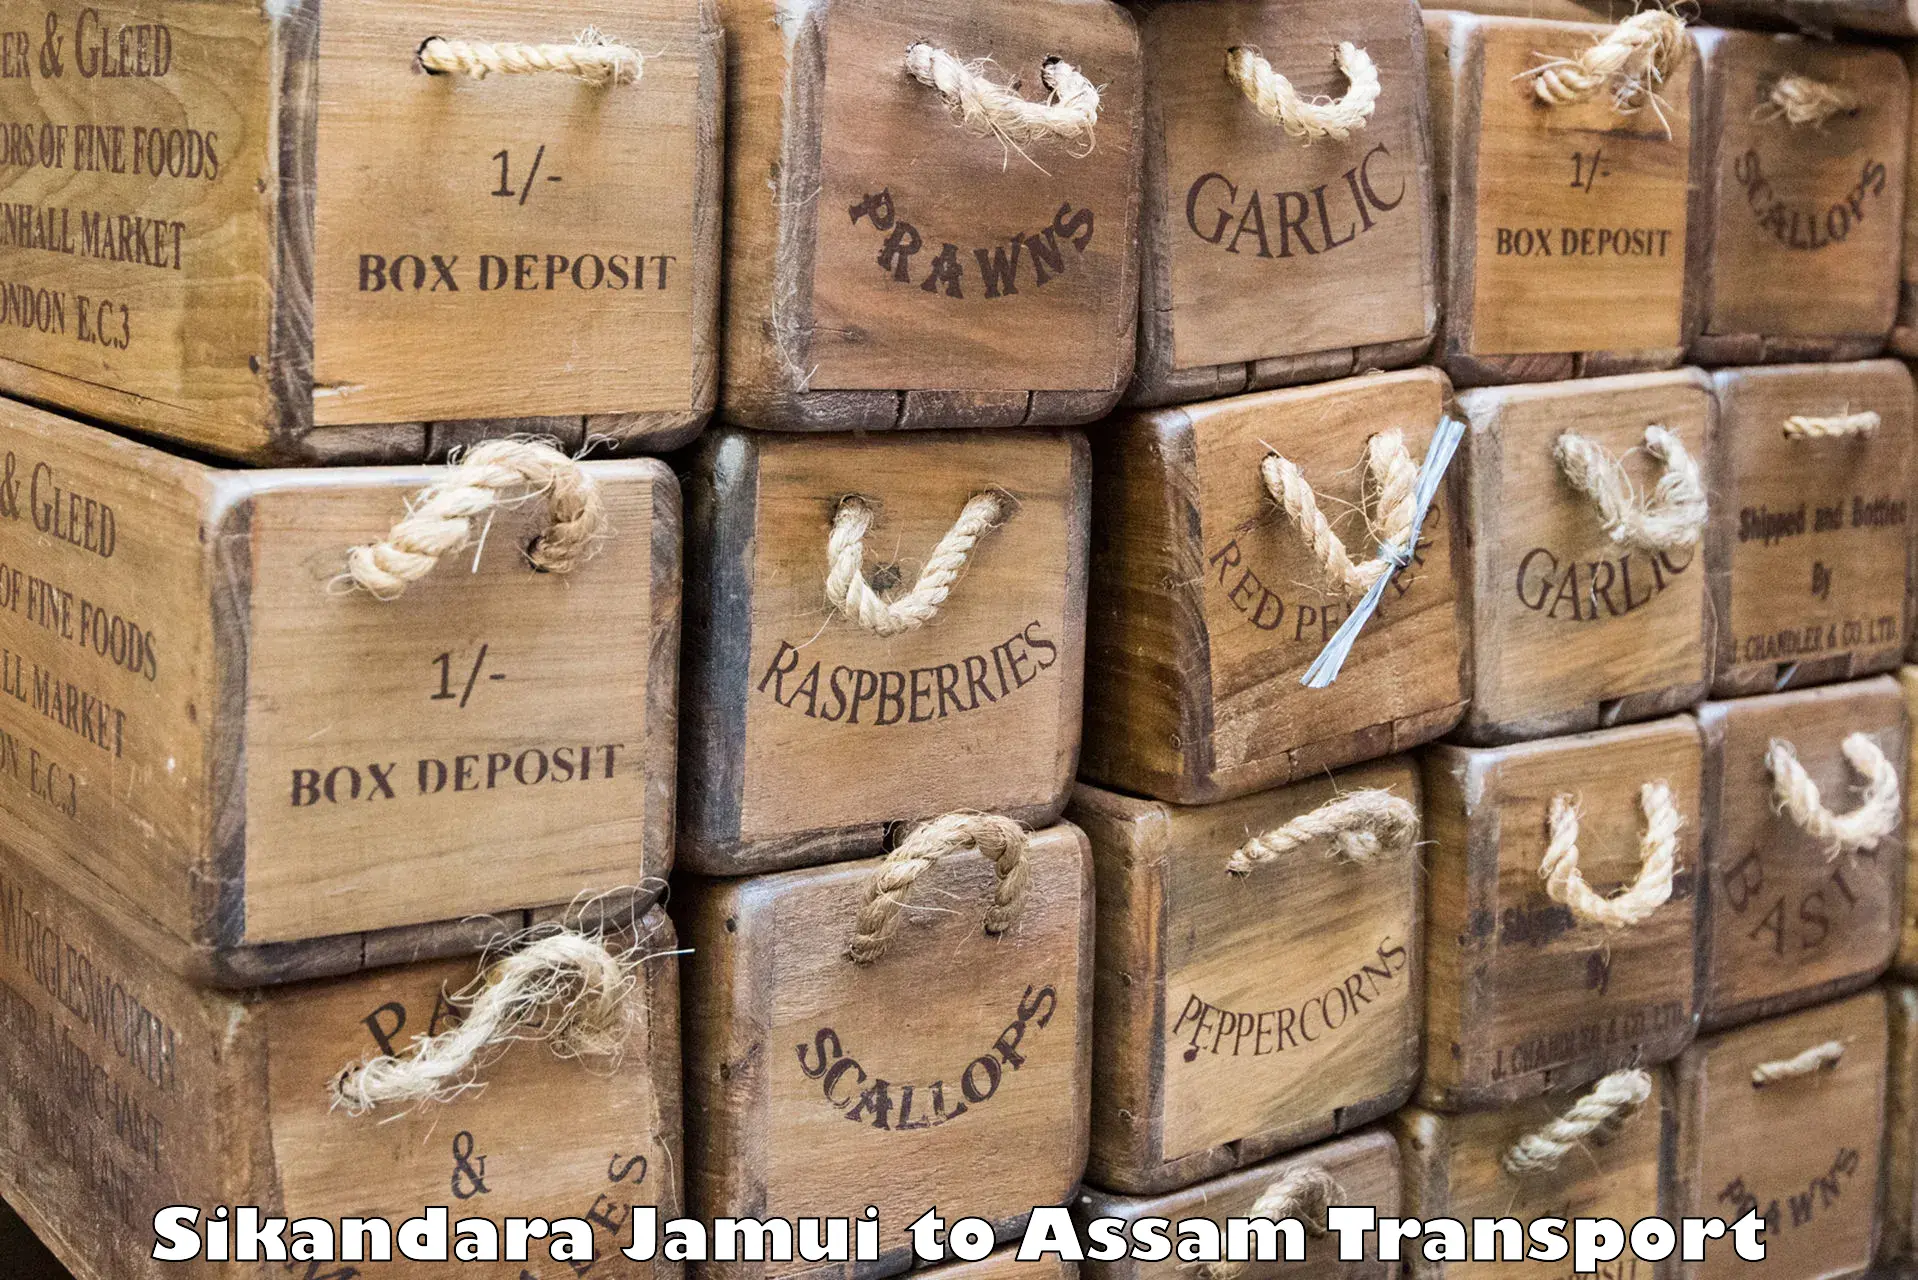 Container transport service Sikandara Jamui to Bokajan